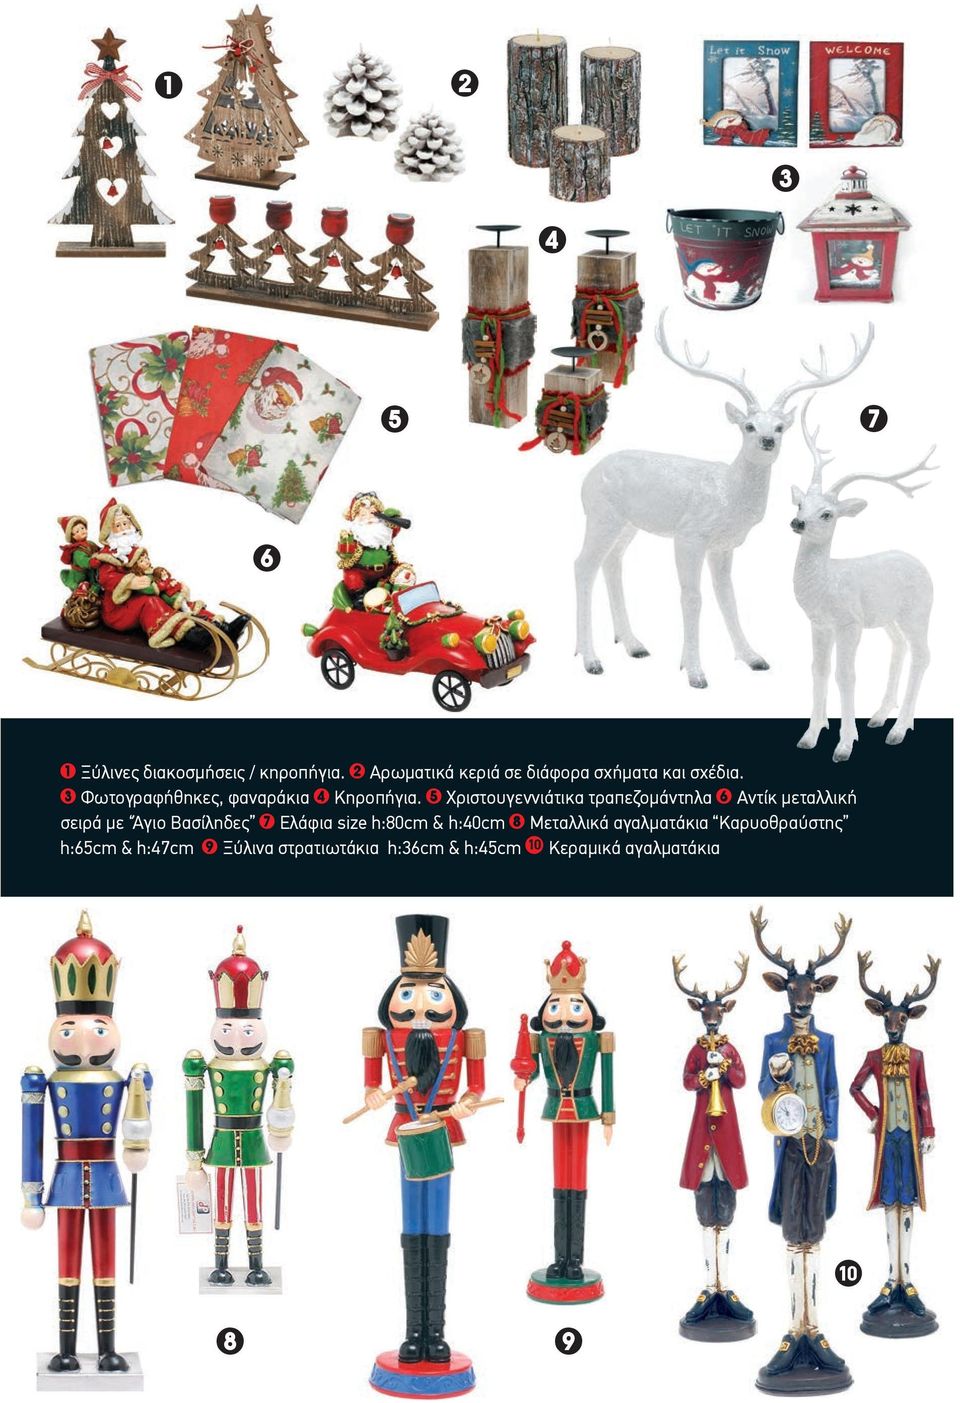 5 Χριστουγεννιάτικα τραπεζομάντηλα 6 Αντίκ μεταλλική σειρά με Άγιο Βασίληδες 7 Ελάφια size